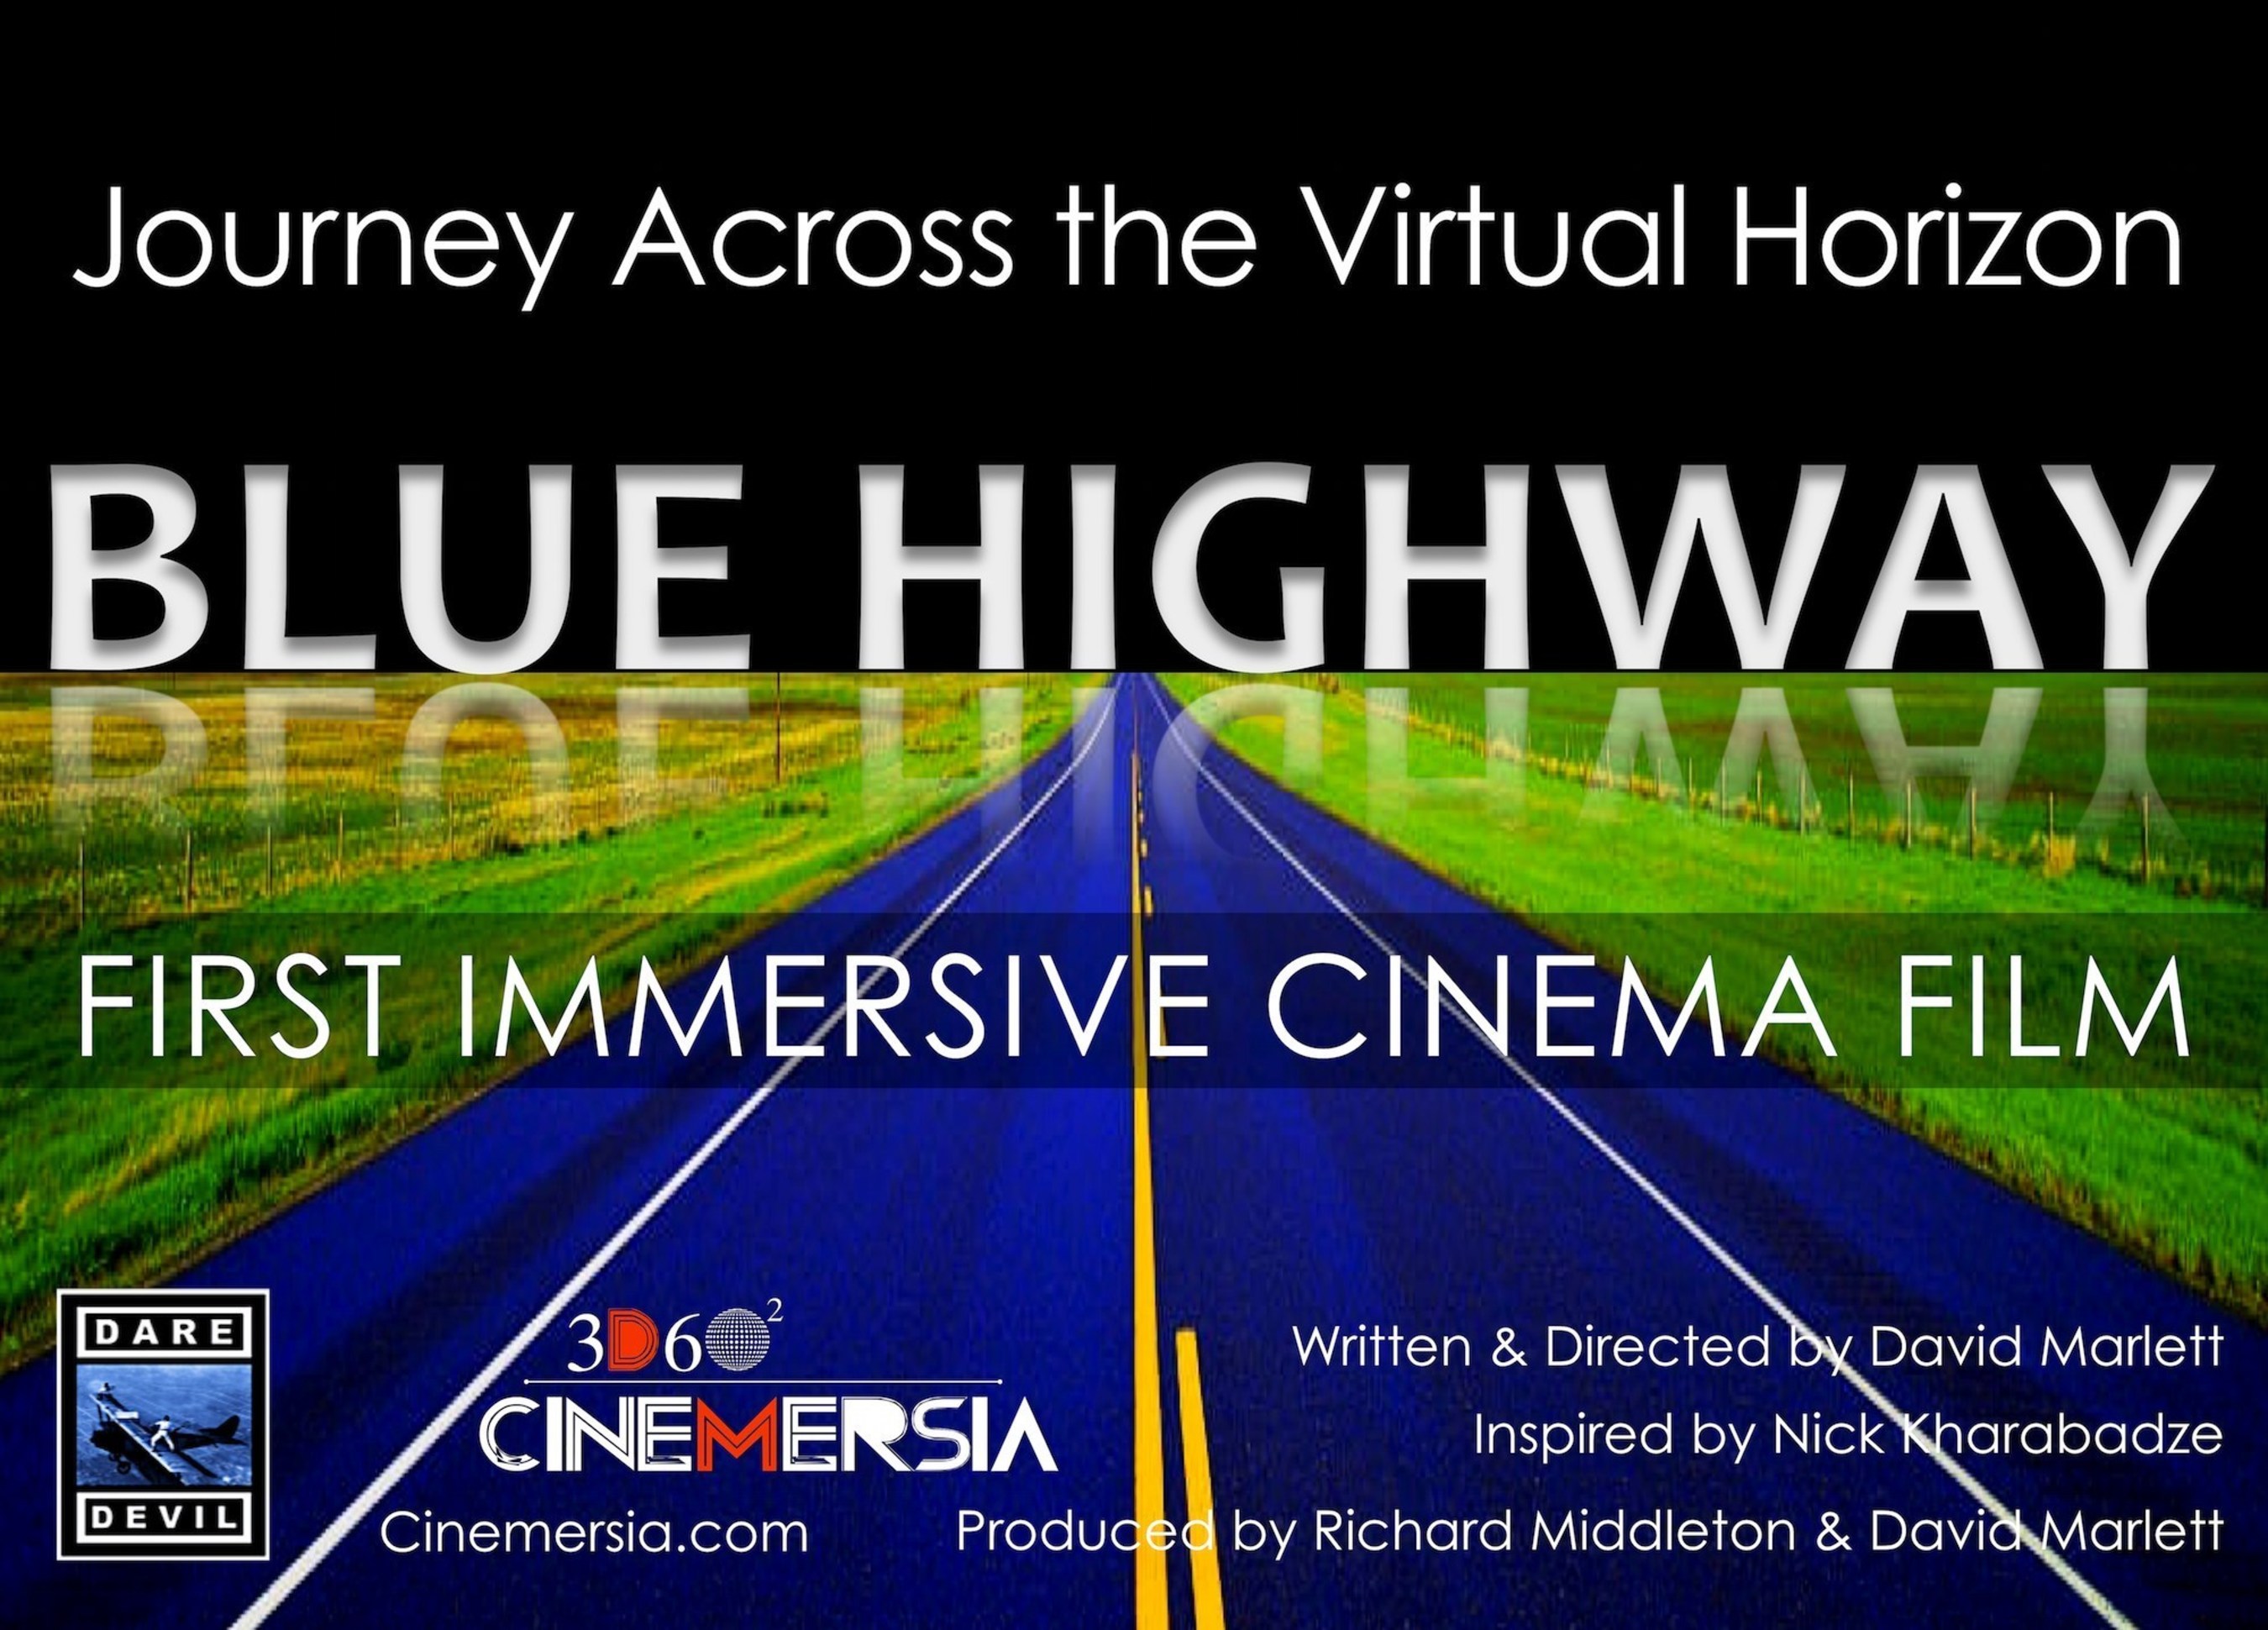 BLUE HIGHWAY: First Immersive Cinema Film